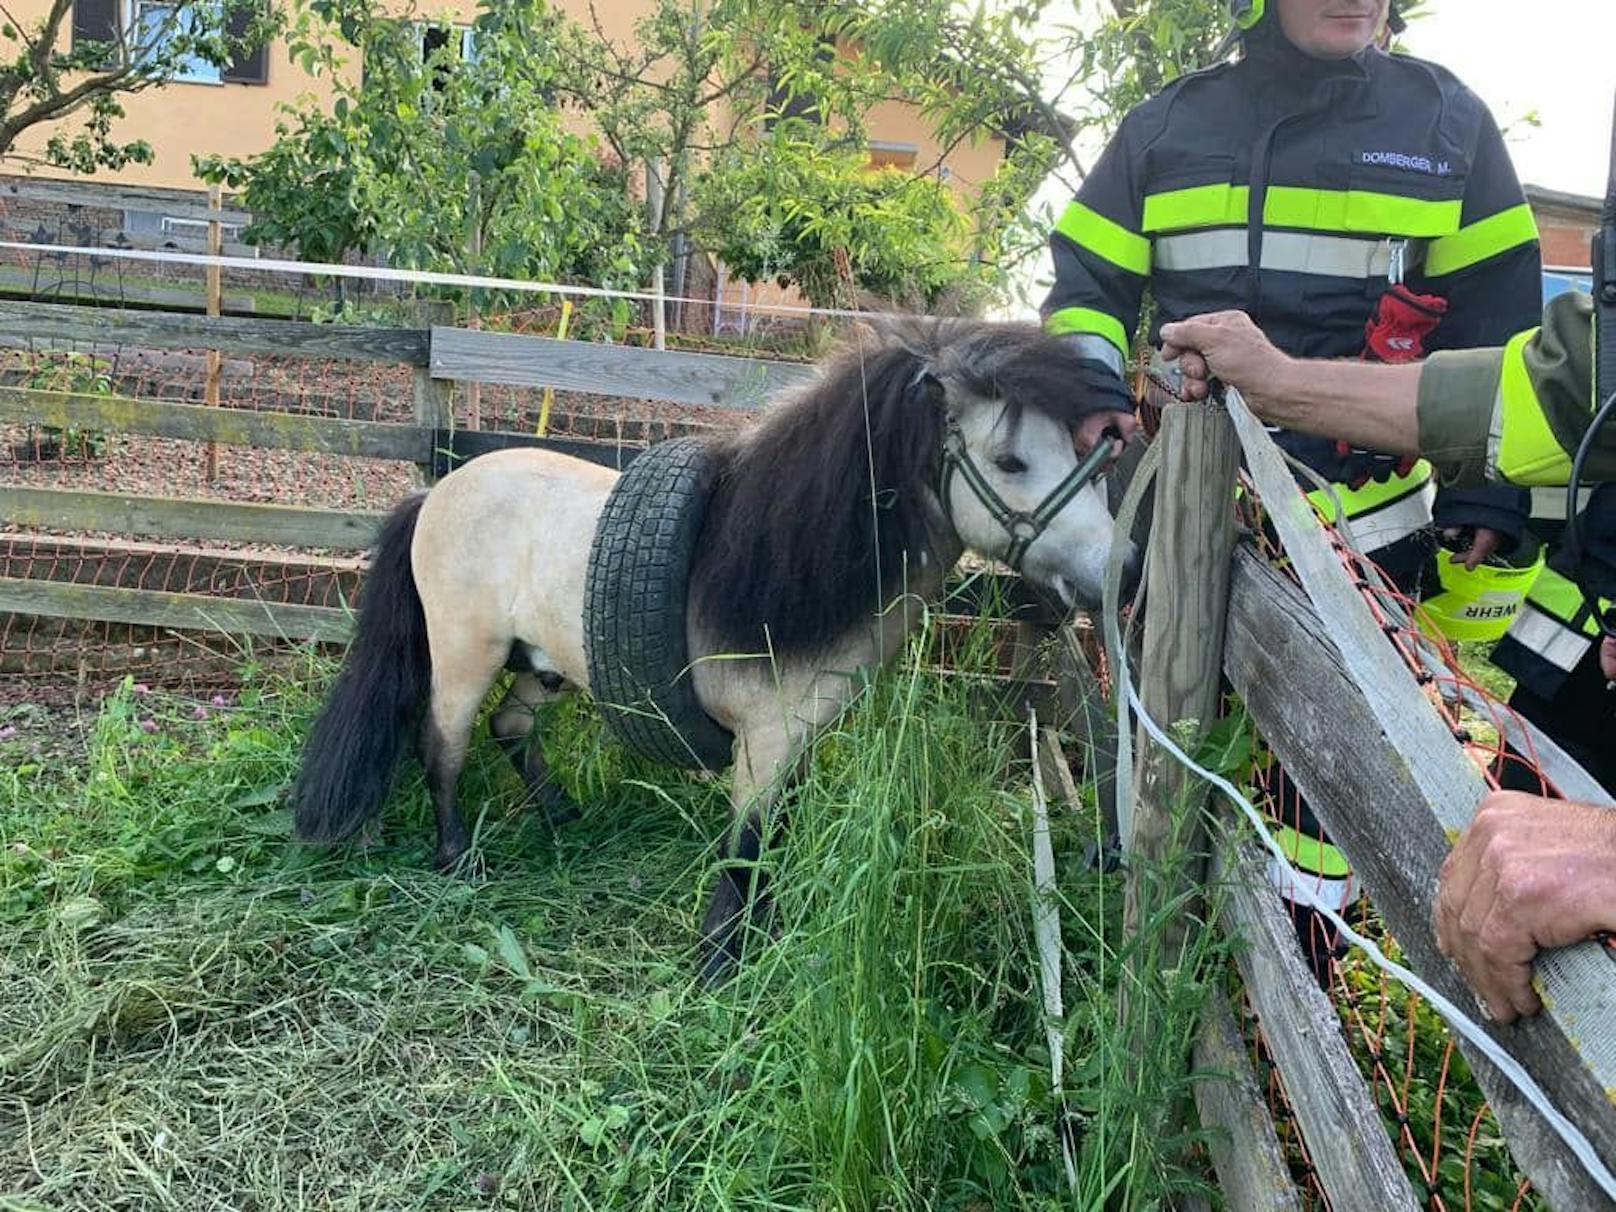 Dank Seifenwasser konnte das Mini-Pferd von der Feuerwehr "gerettet" werden.